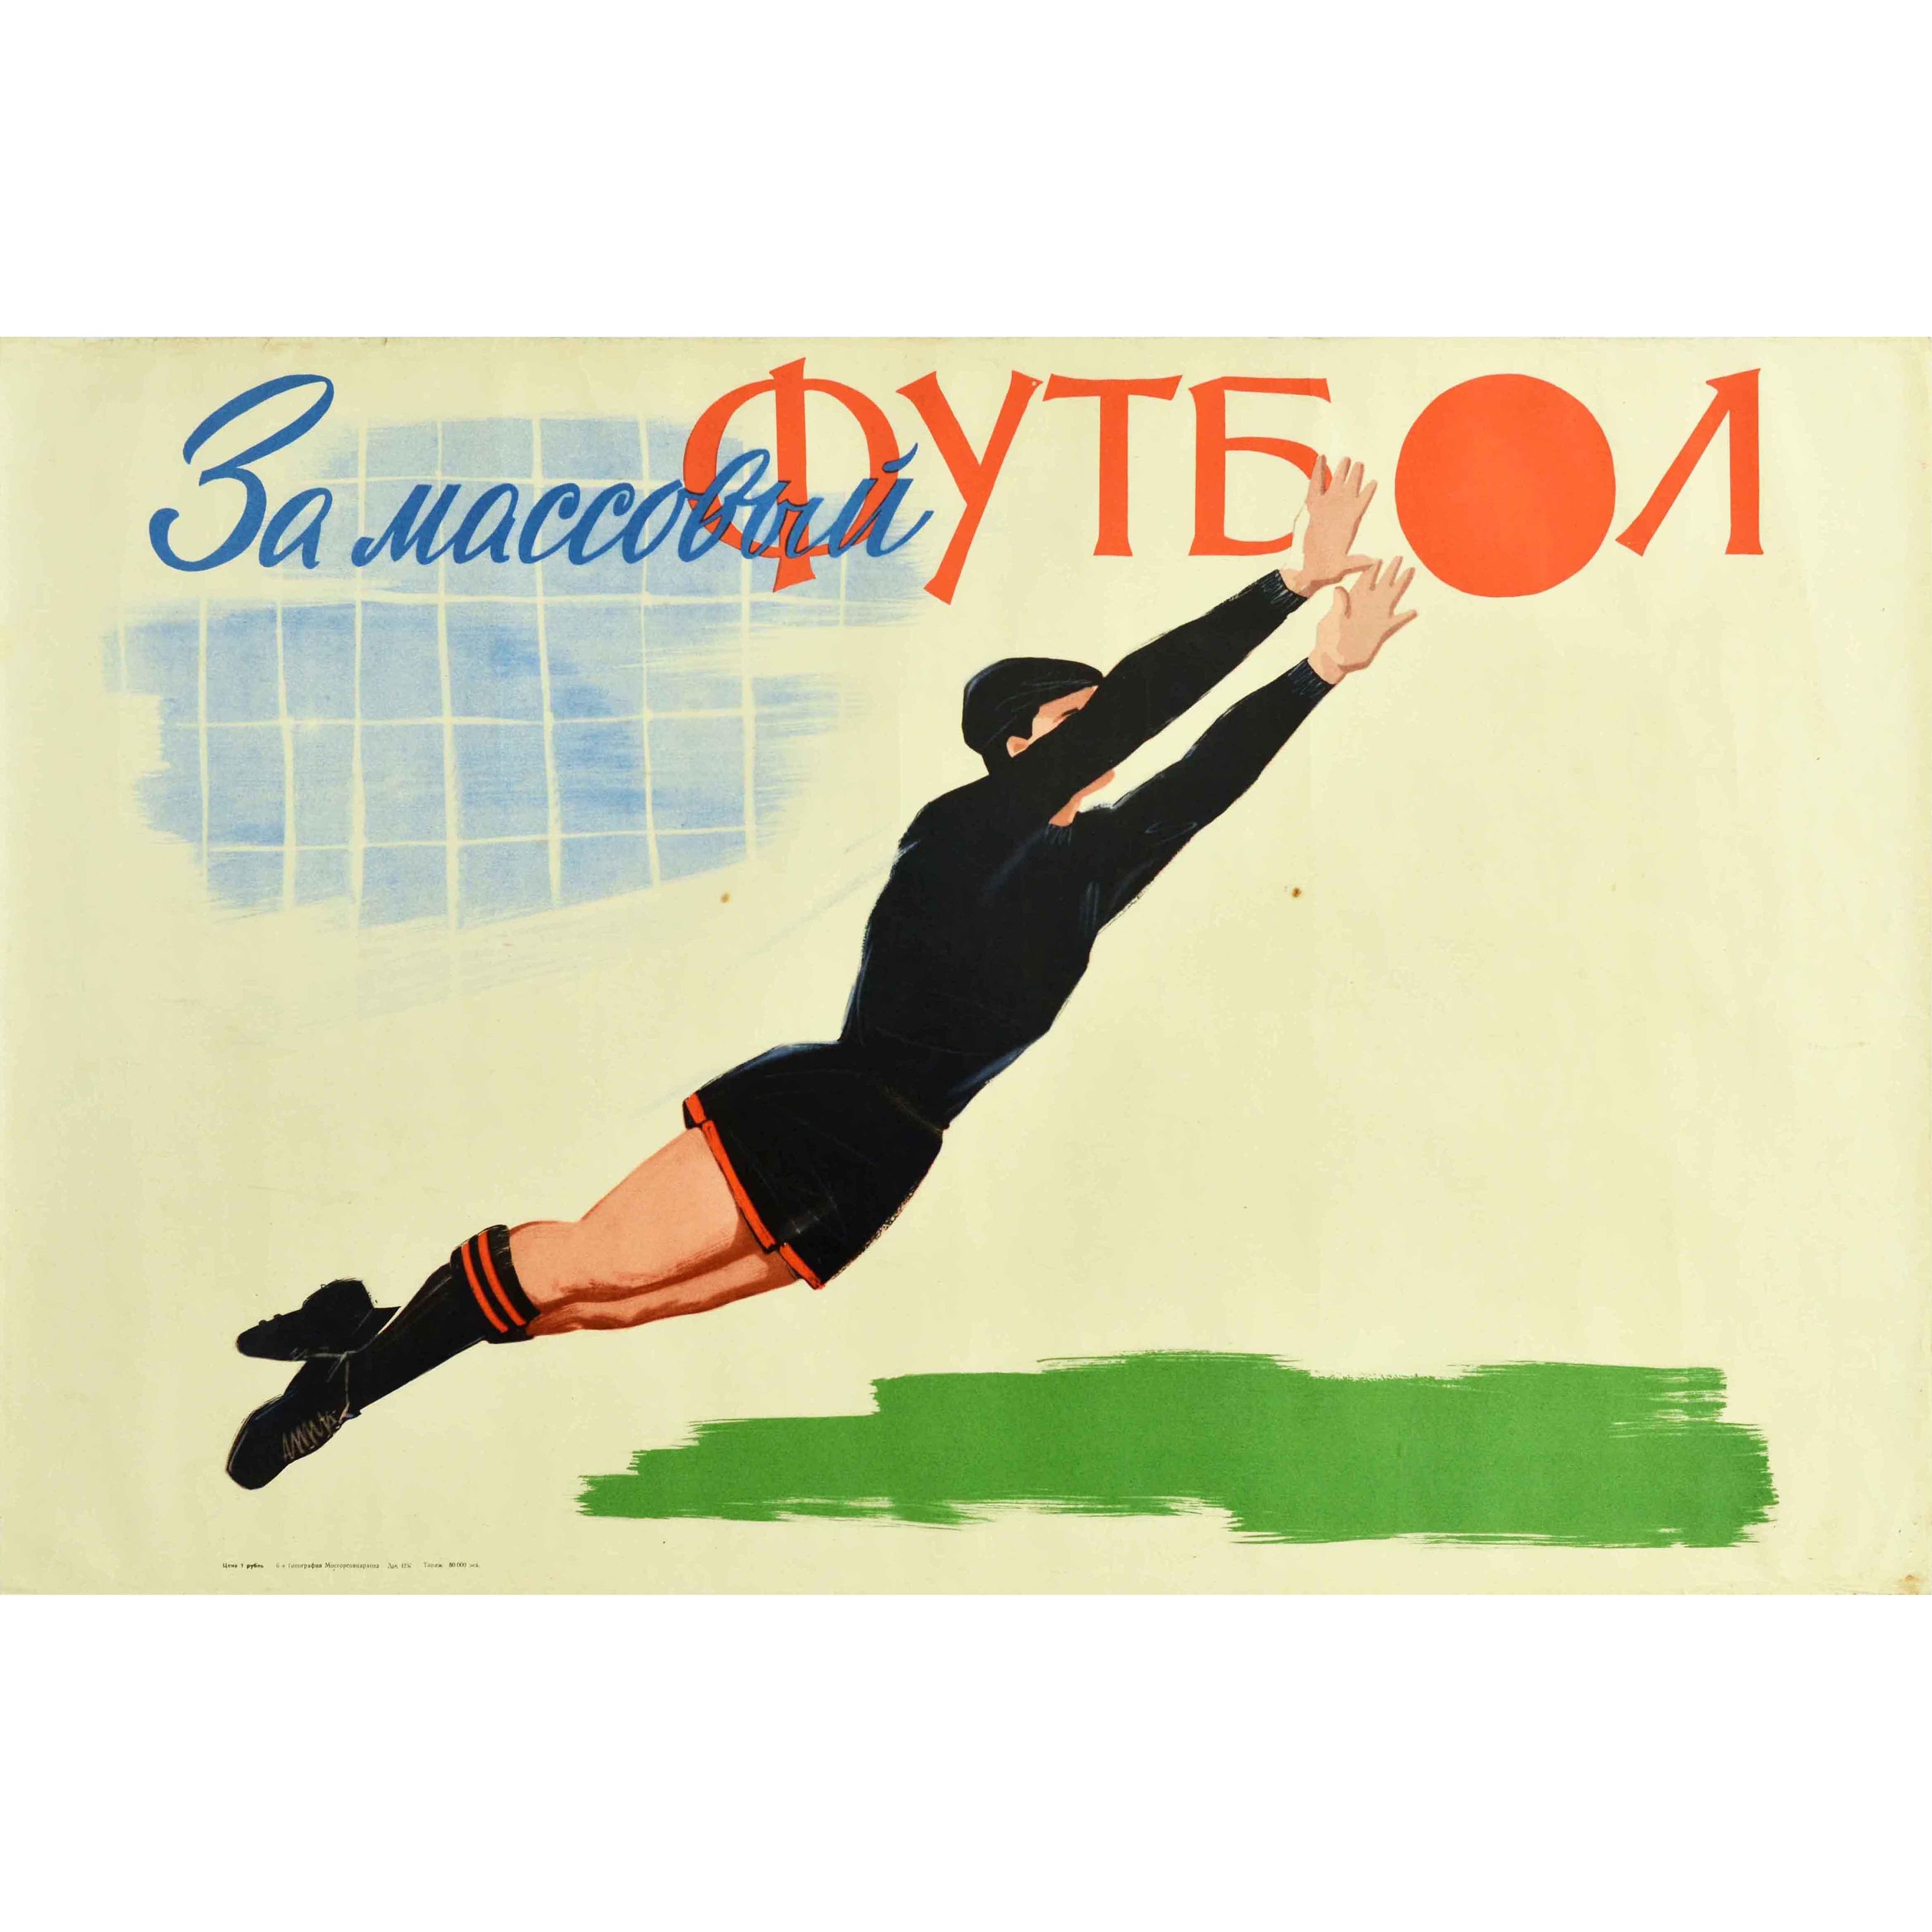 Original Vintage Poster Grassroots Football Goalkeeper USSR Soviet Sport Futbol